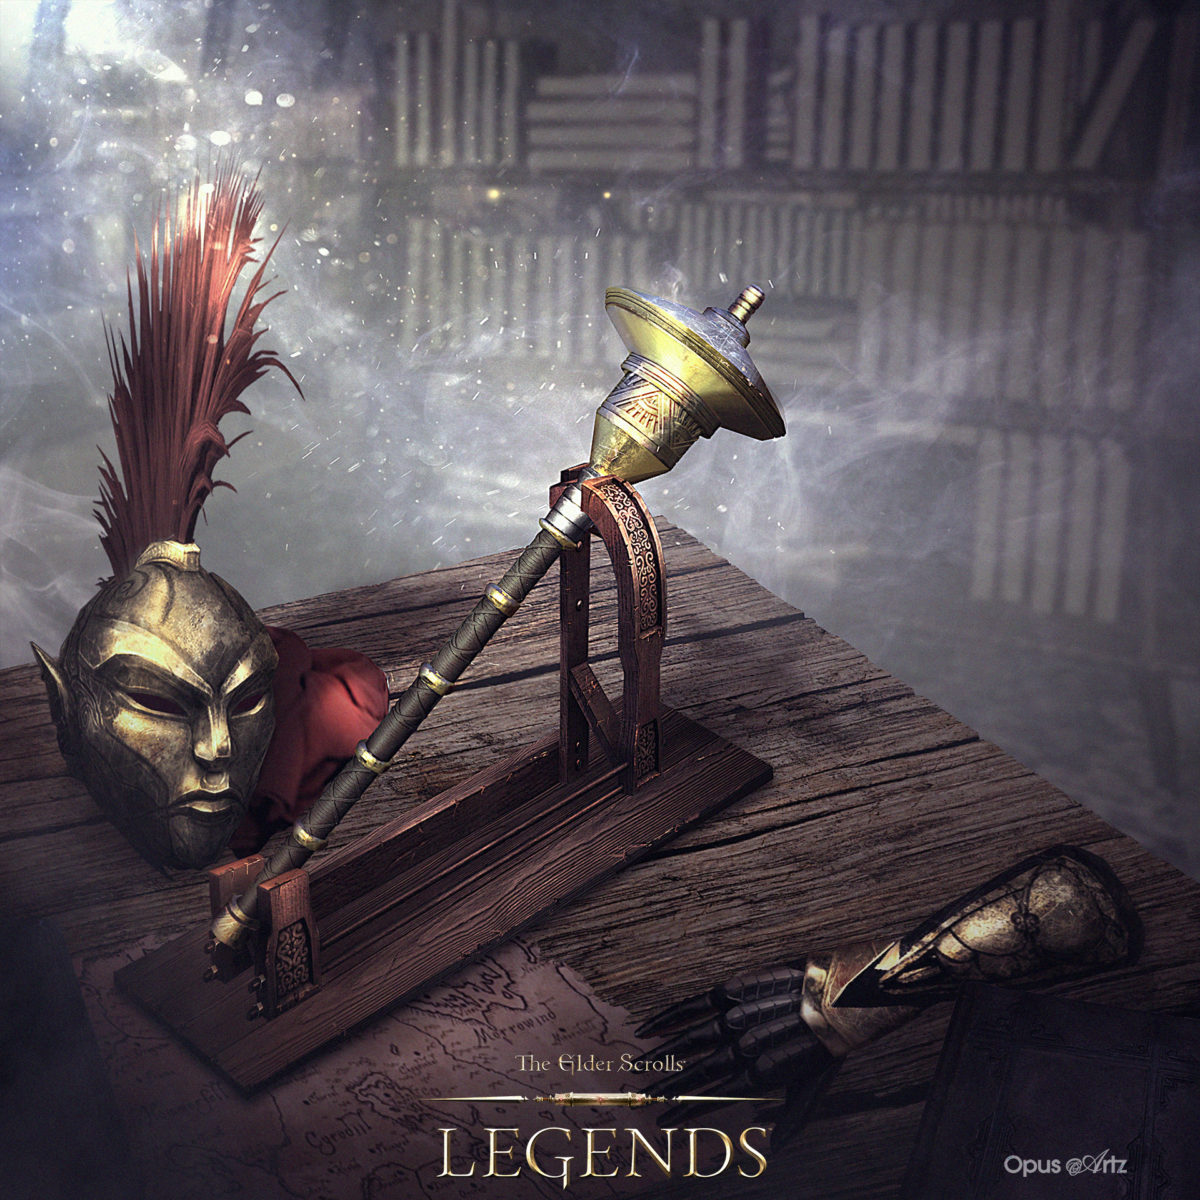 Item Card Illustrations for the Elder Scrolls Legends